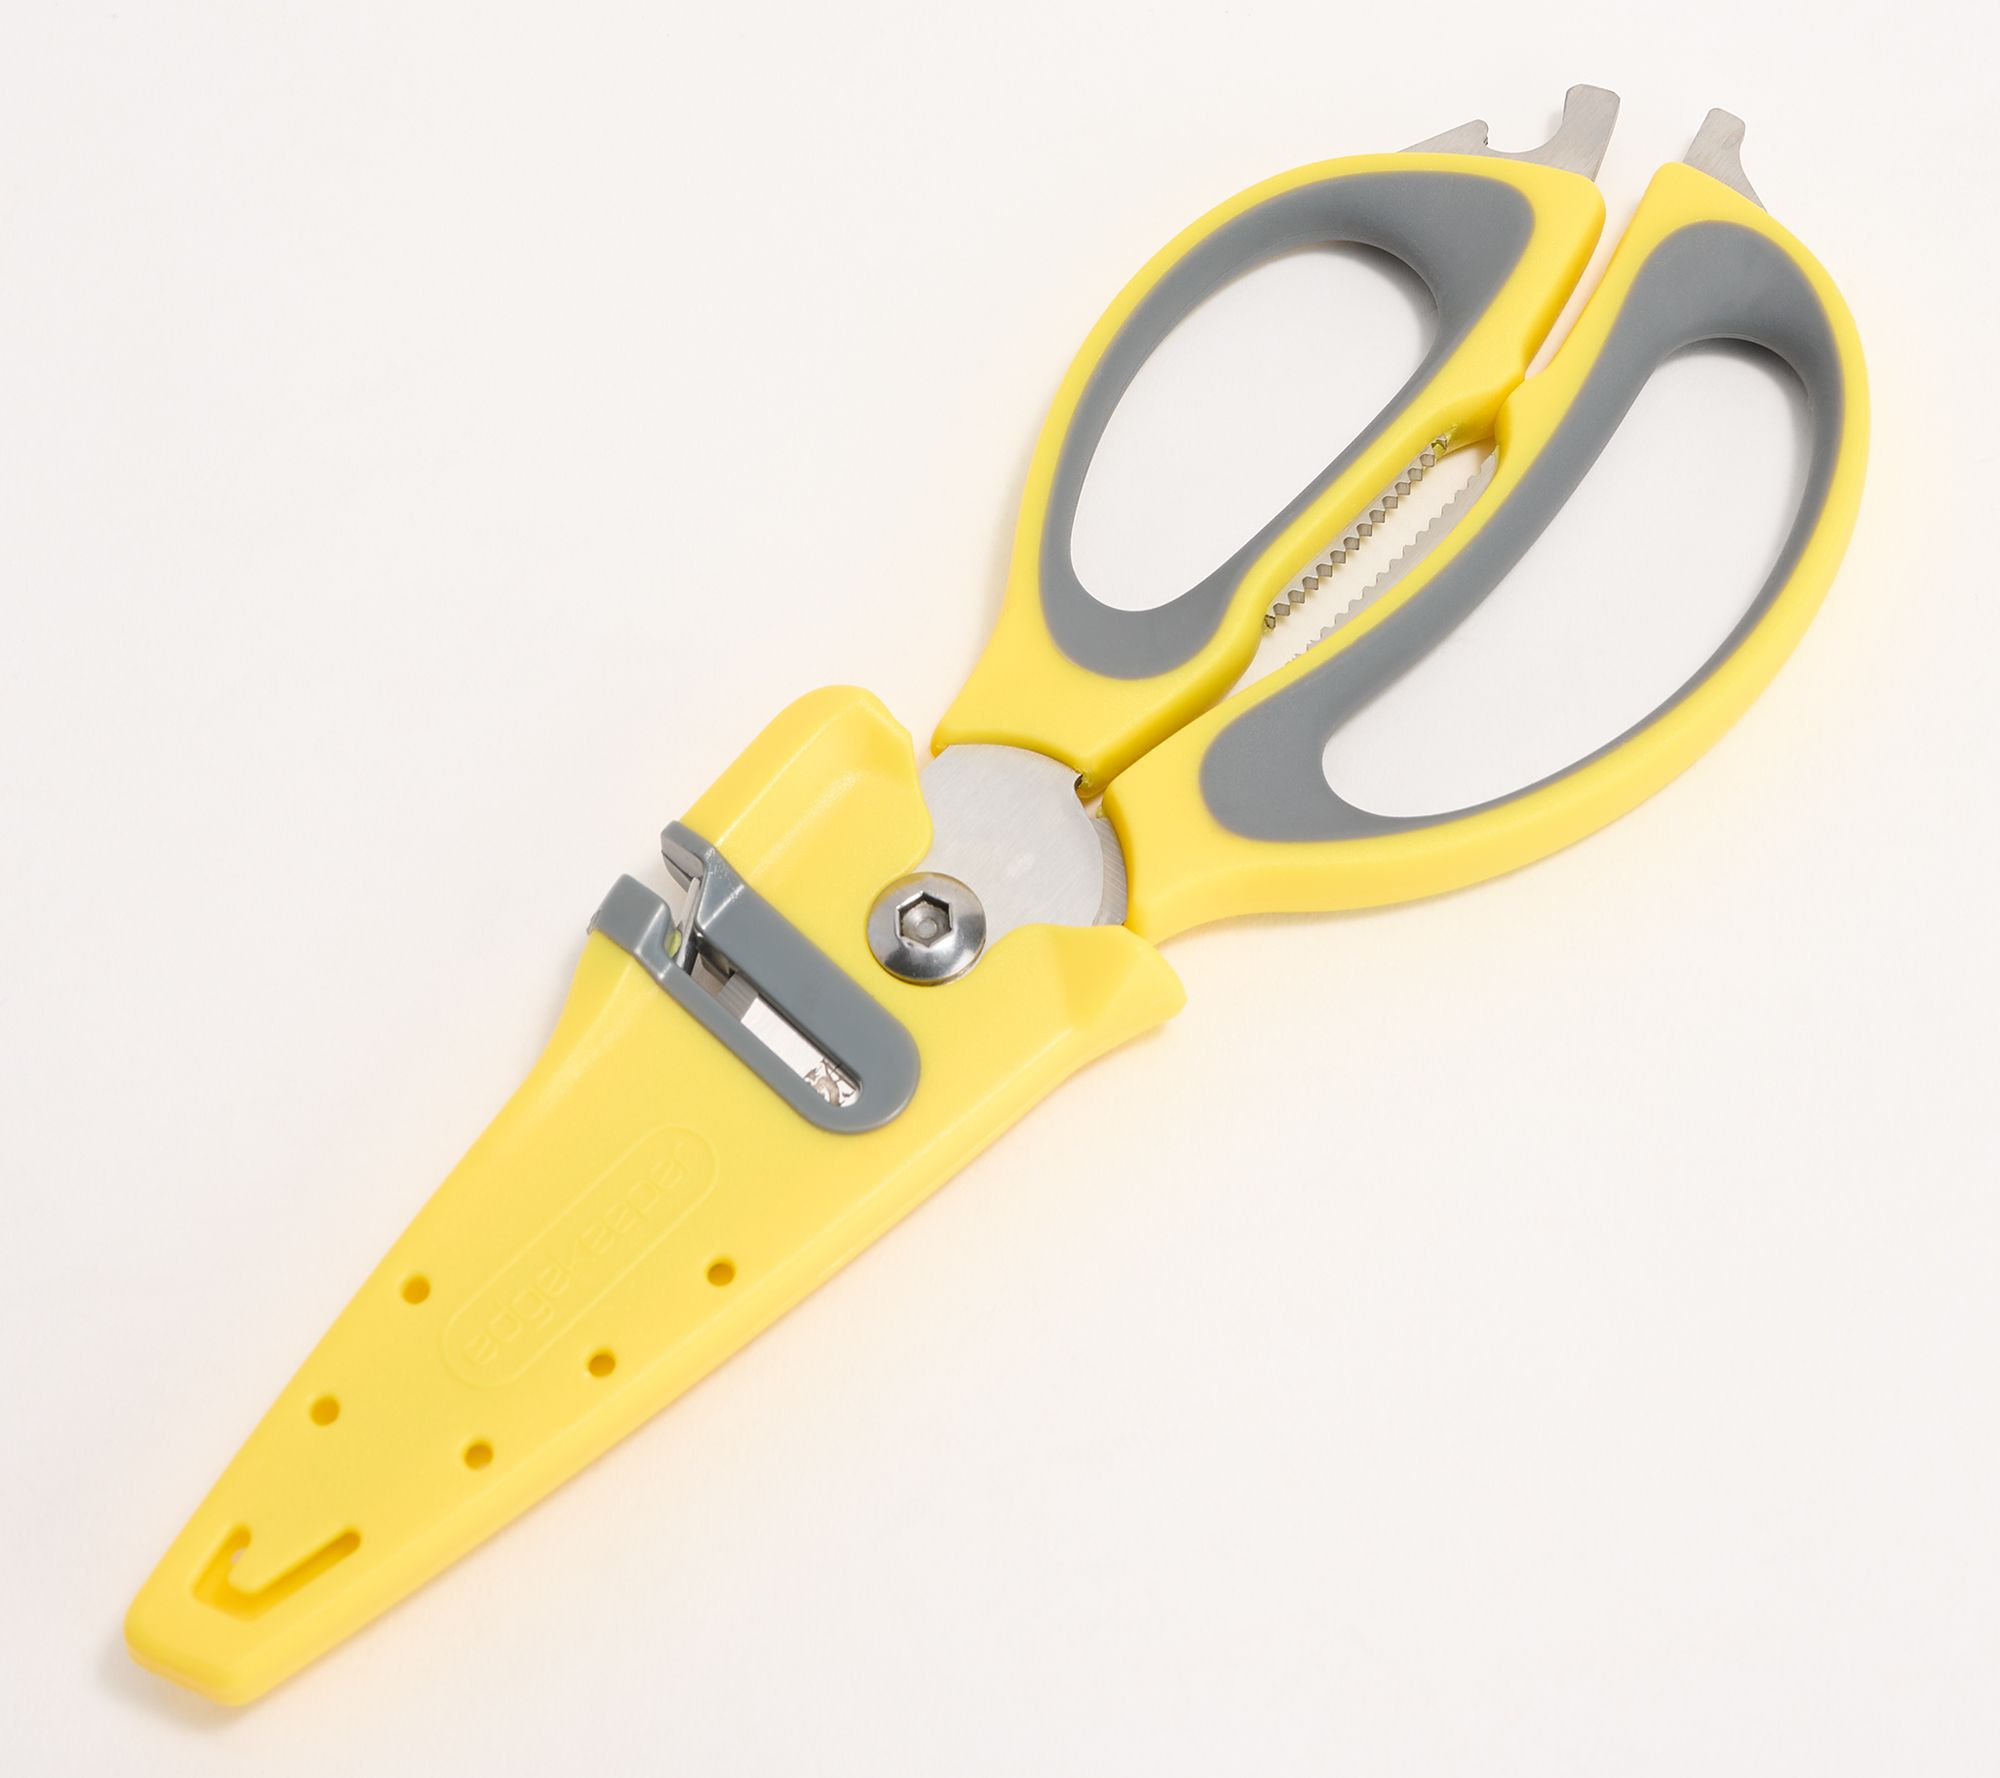  Sabatier 2-in-1 All-Purpose Scissors, Gift Wrap